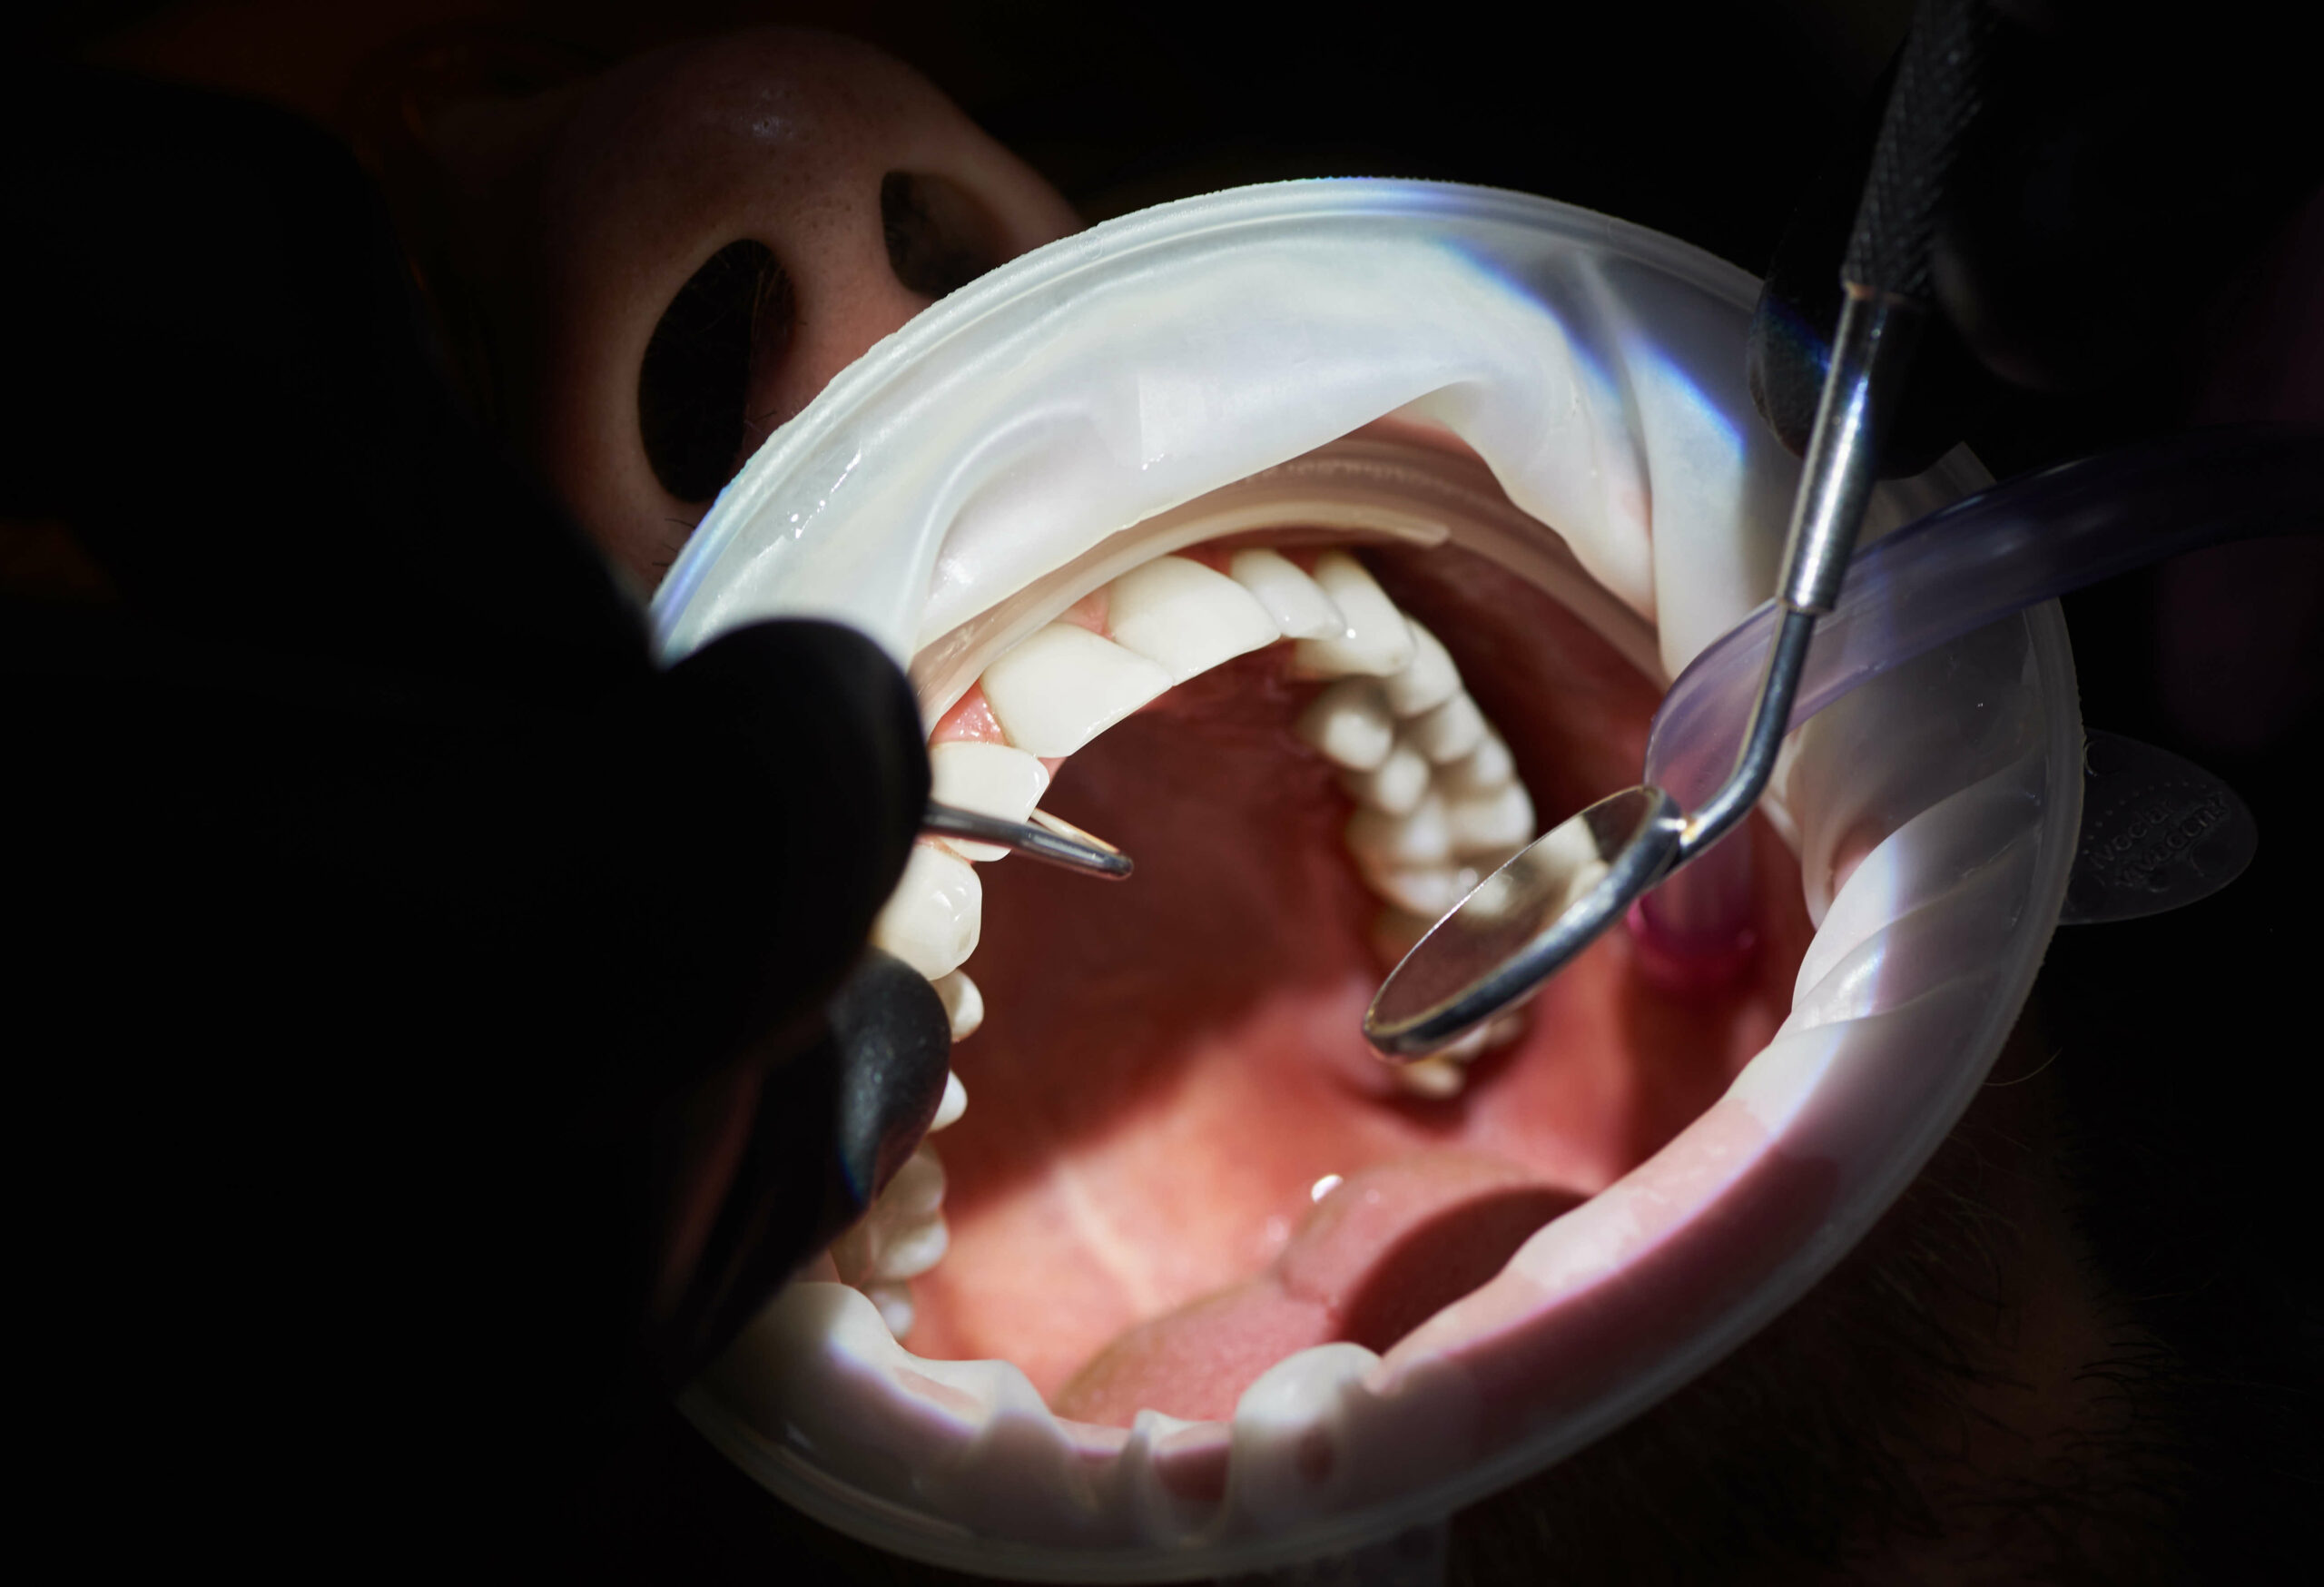 Ultrassom na odontologia: 7 usos na área de endodontia